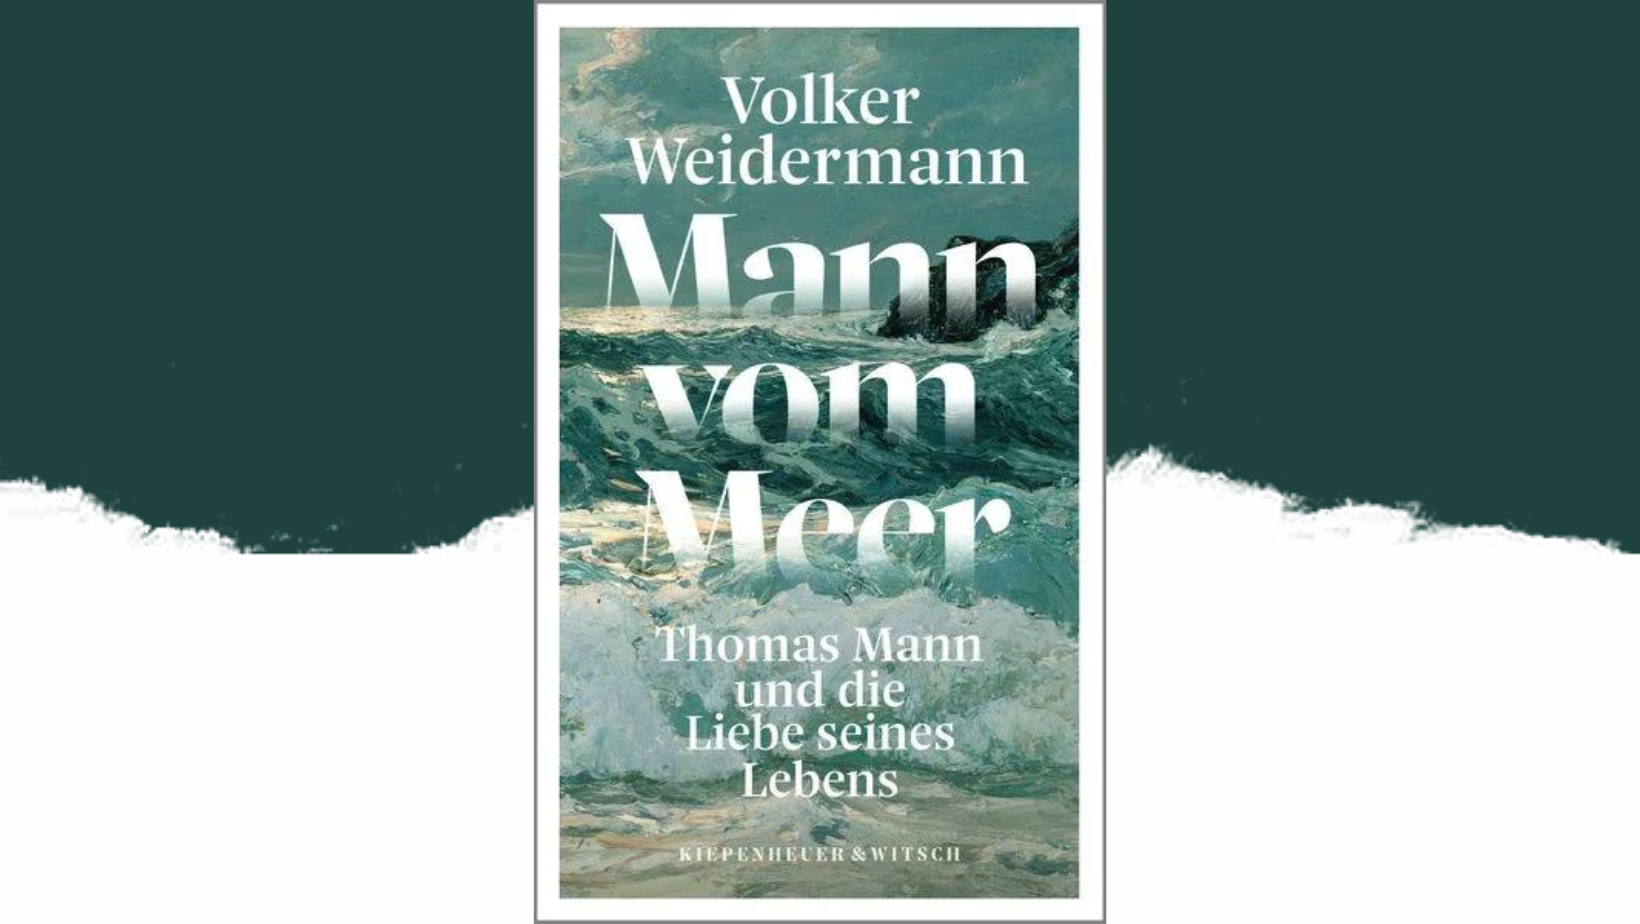 Volker Weidermann – Mann vom Meer. Thomas Mann und die Liebe seines Lebens